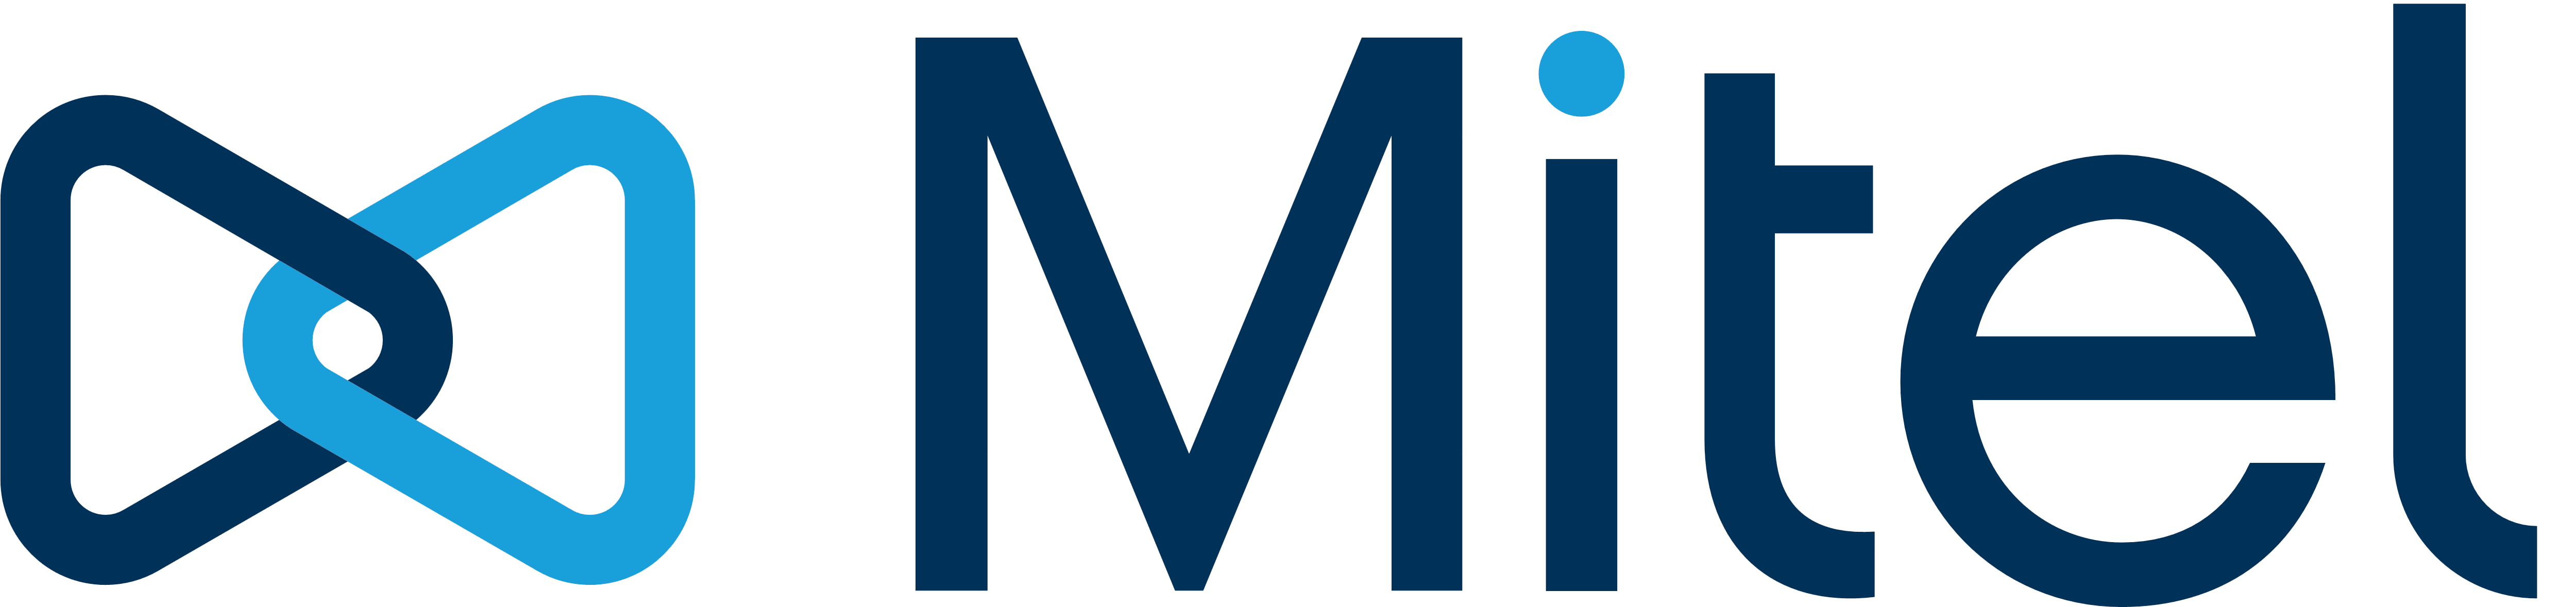 New Mitel Logo - Mitel